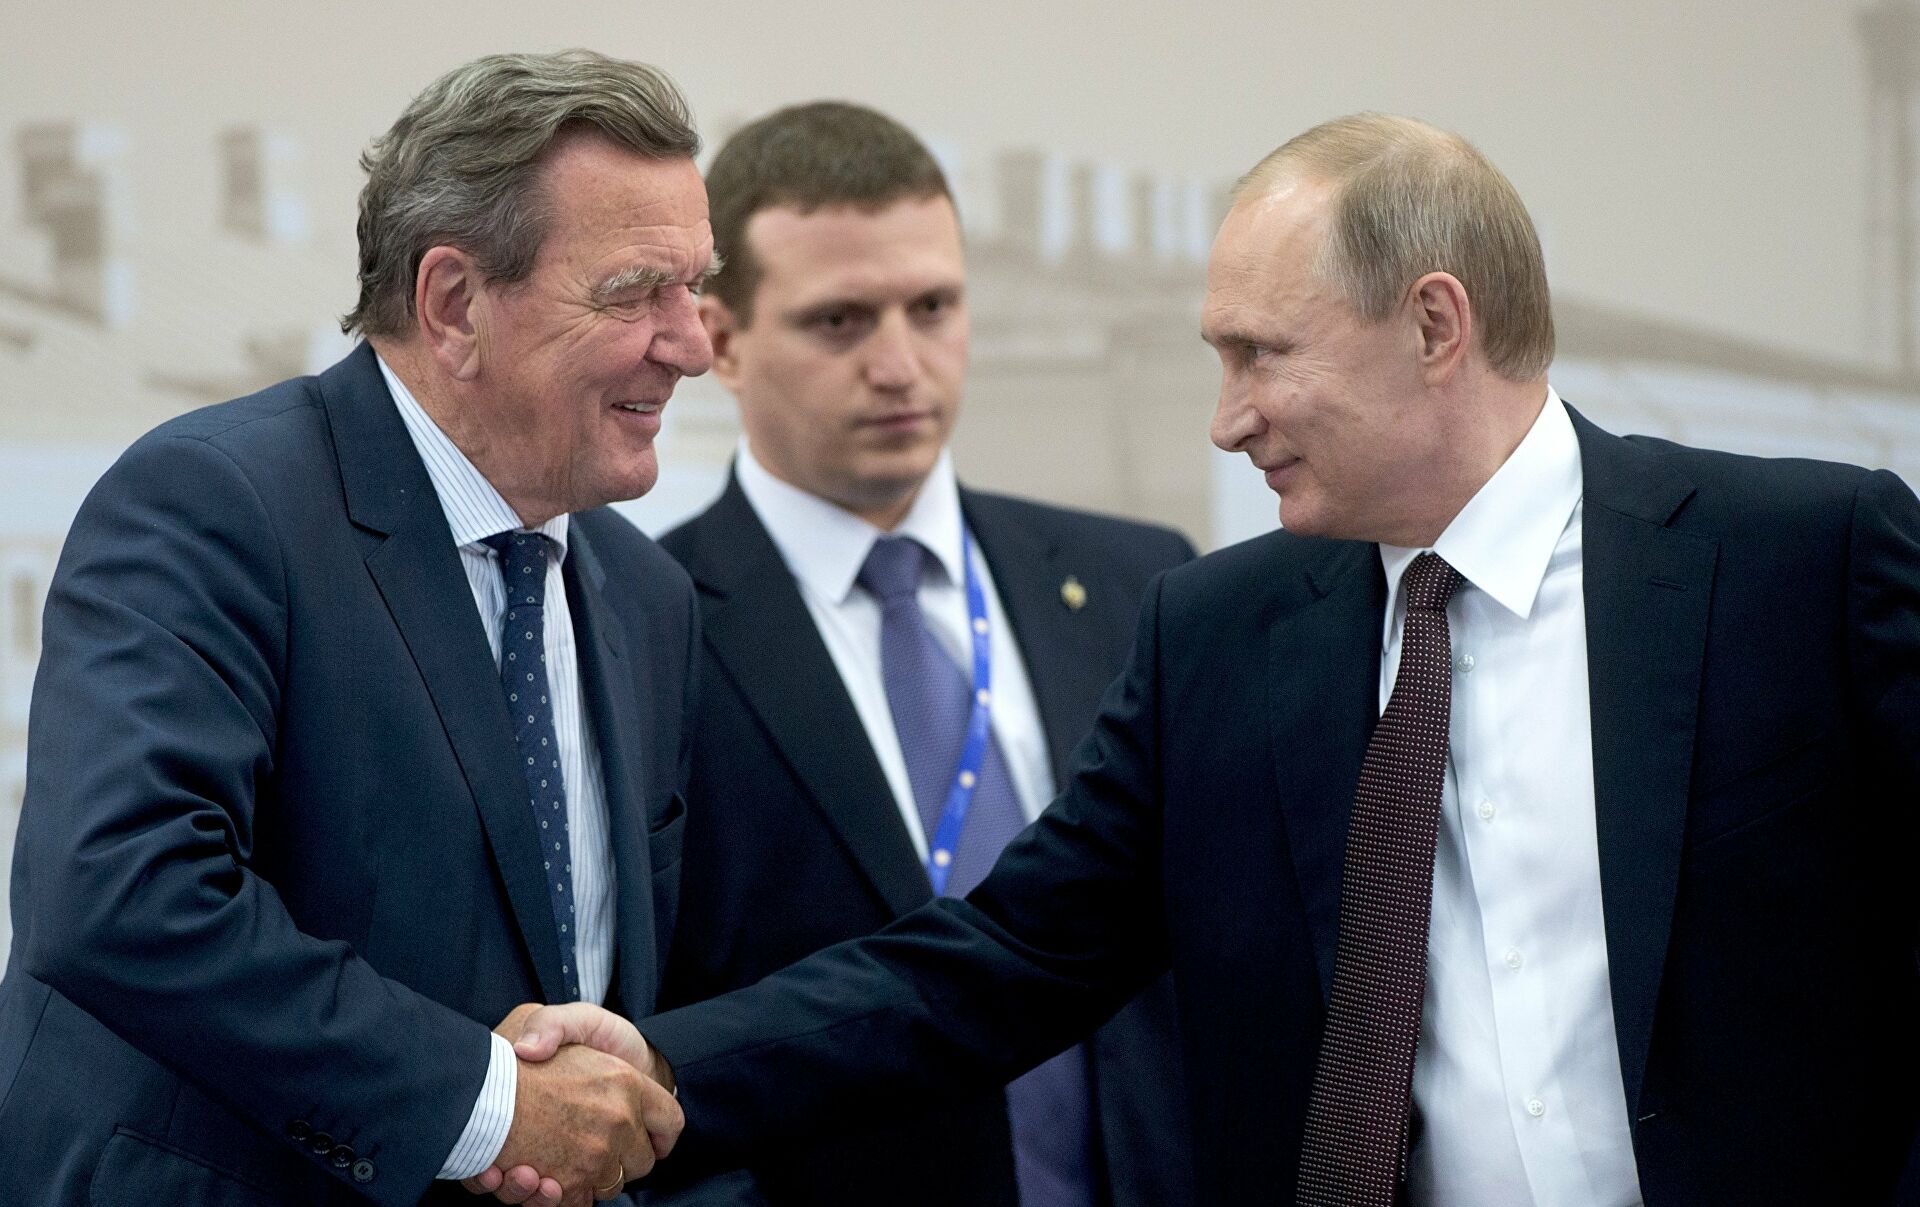 Ucraina, dall'Spd ultimatum a Schroeder: "Fermi i suoi rapporti con la Russia o sarà espulso"